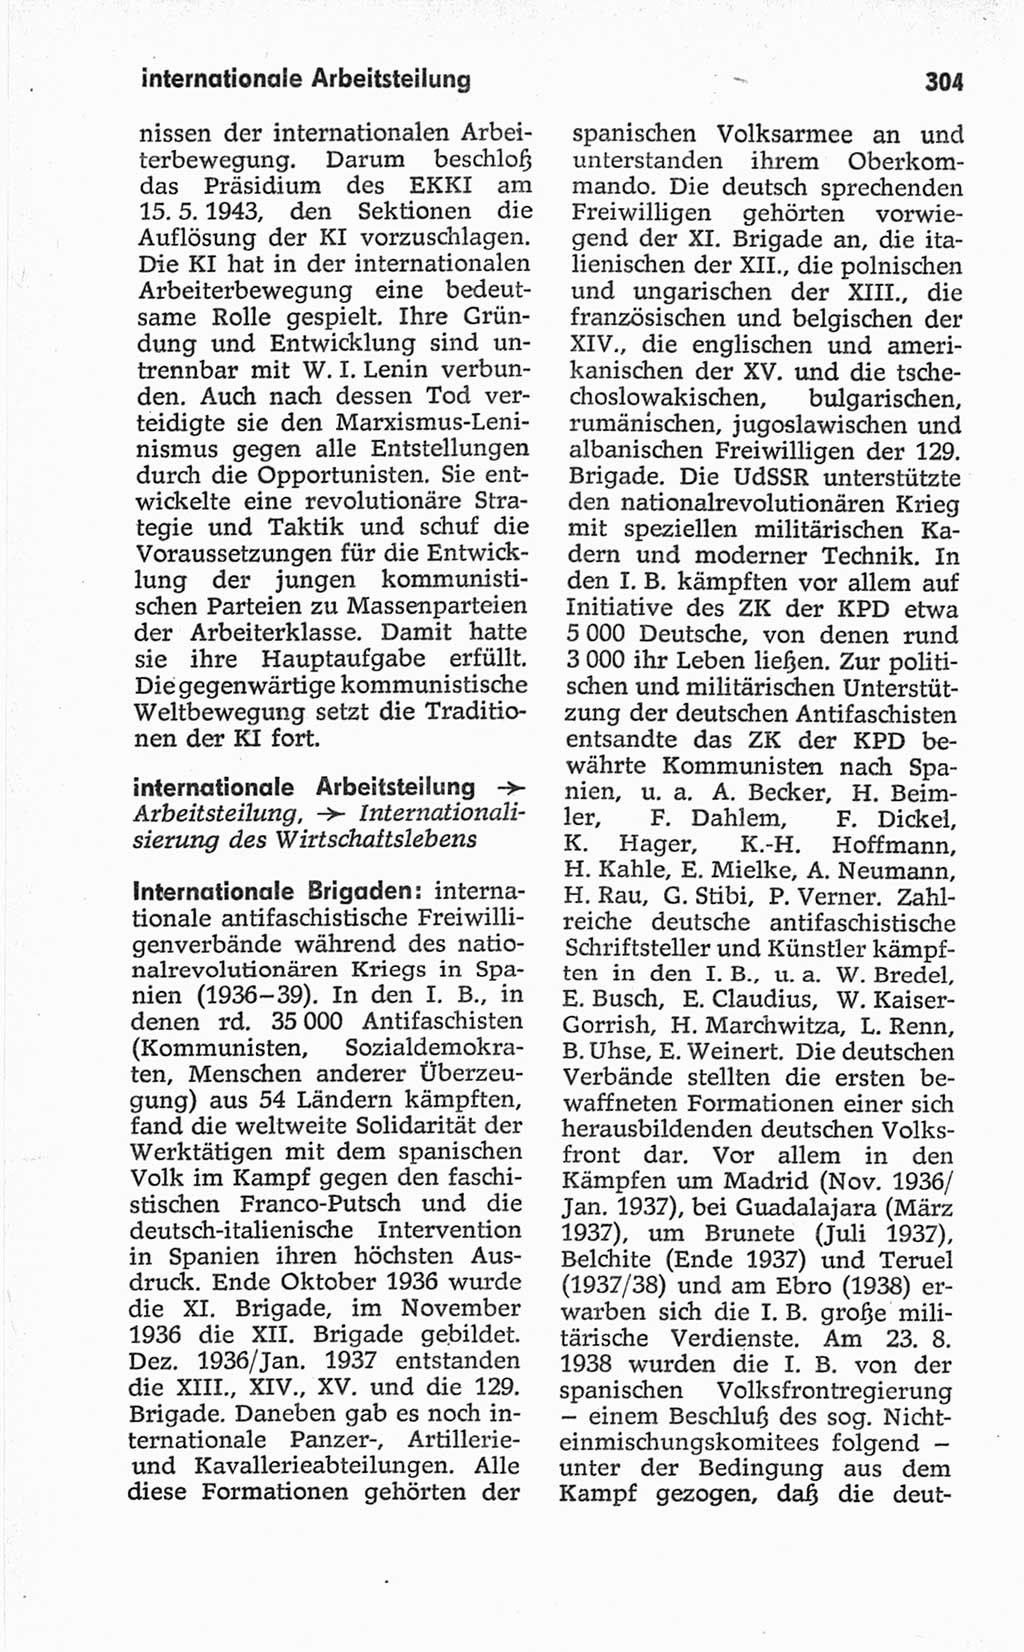 Kleines politisches Wörterbuch [Deutsche Demokratische Republik (DDR)] 1967, Seite 304 (Kl. pol. Wb. DDR 1967, S. 304)